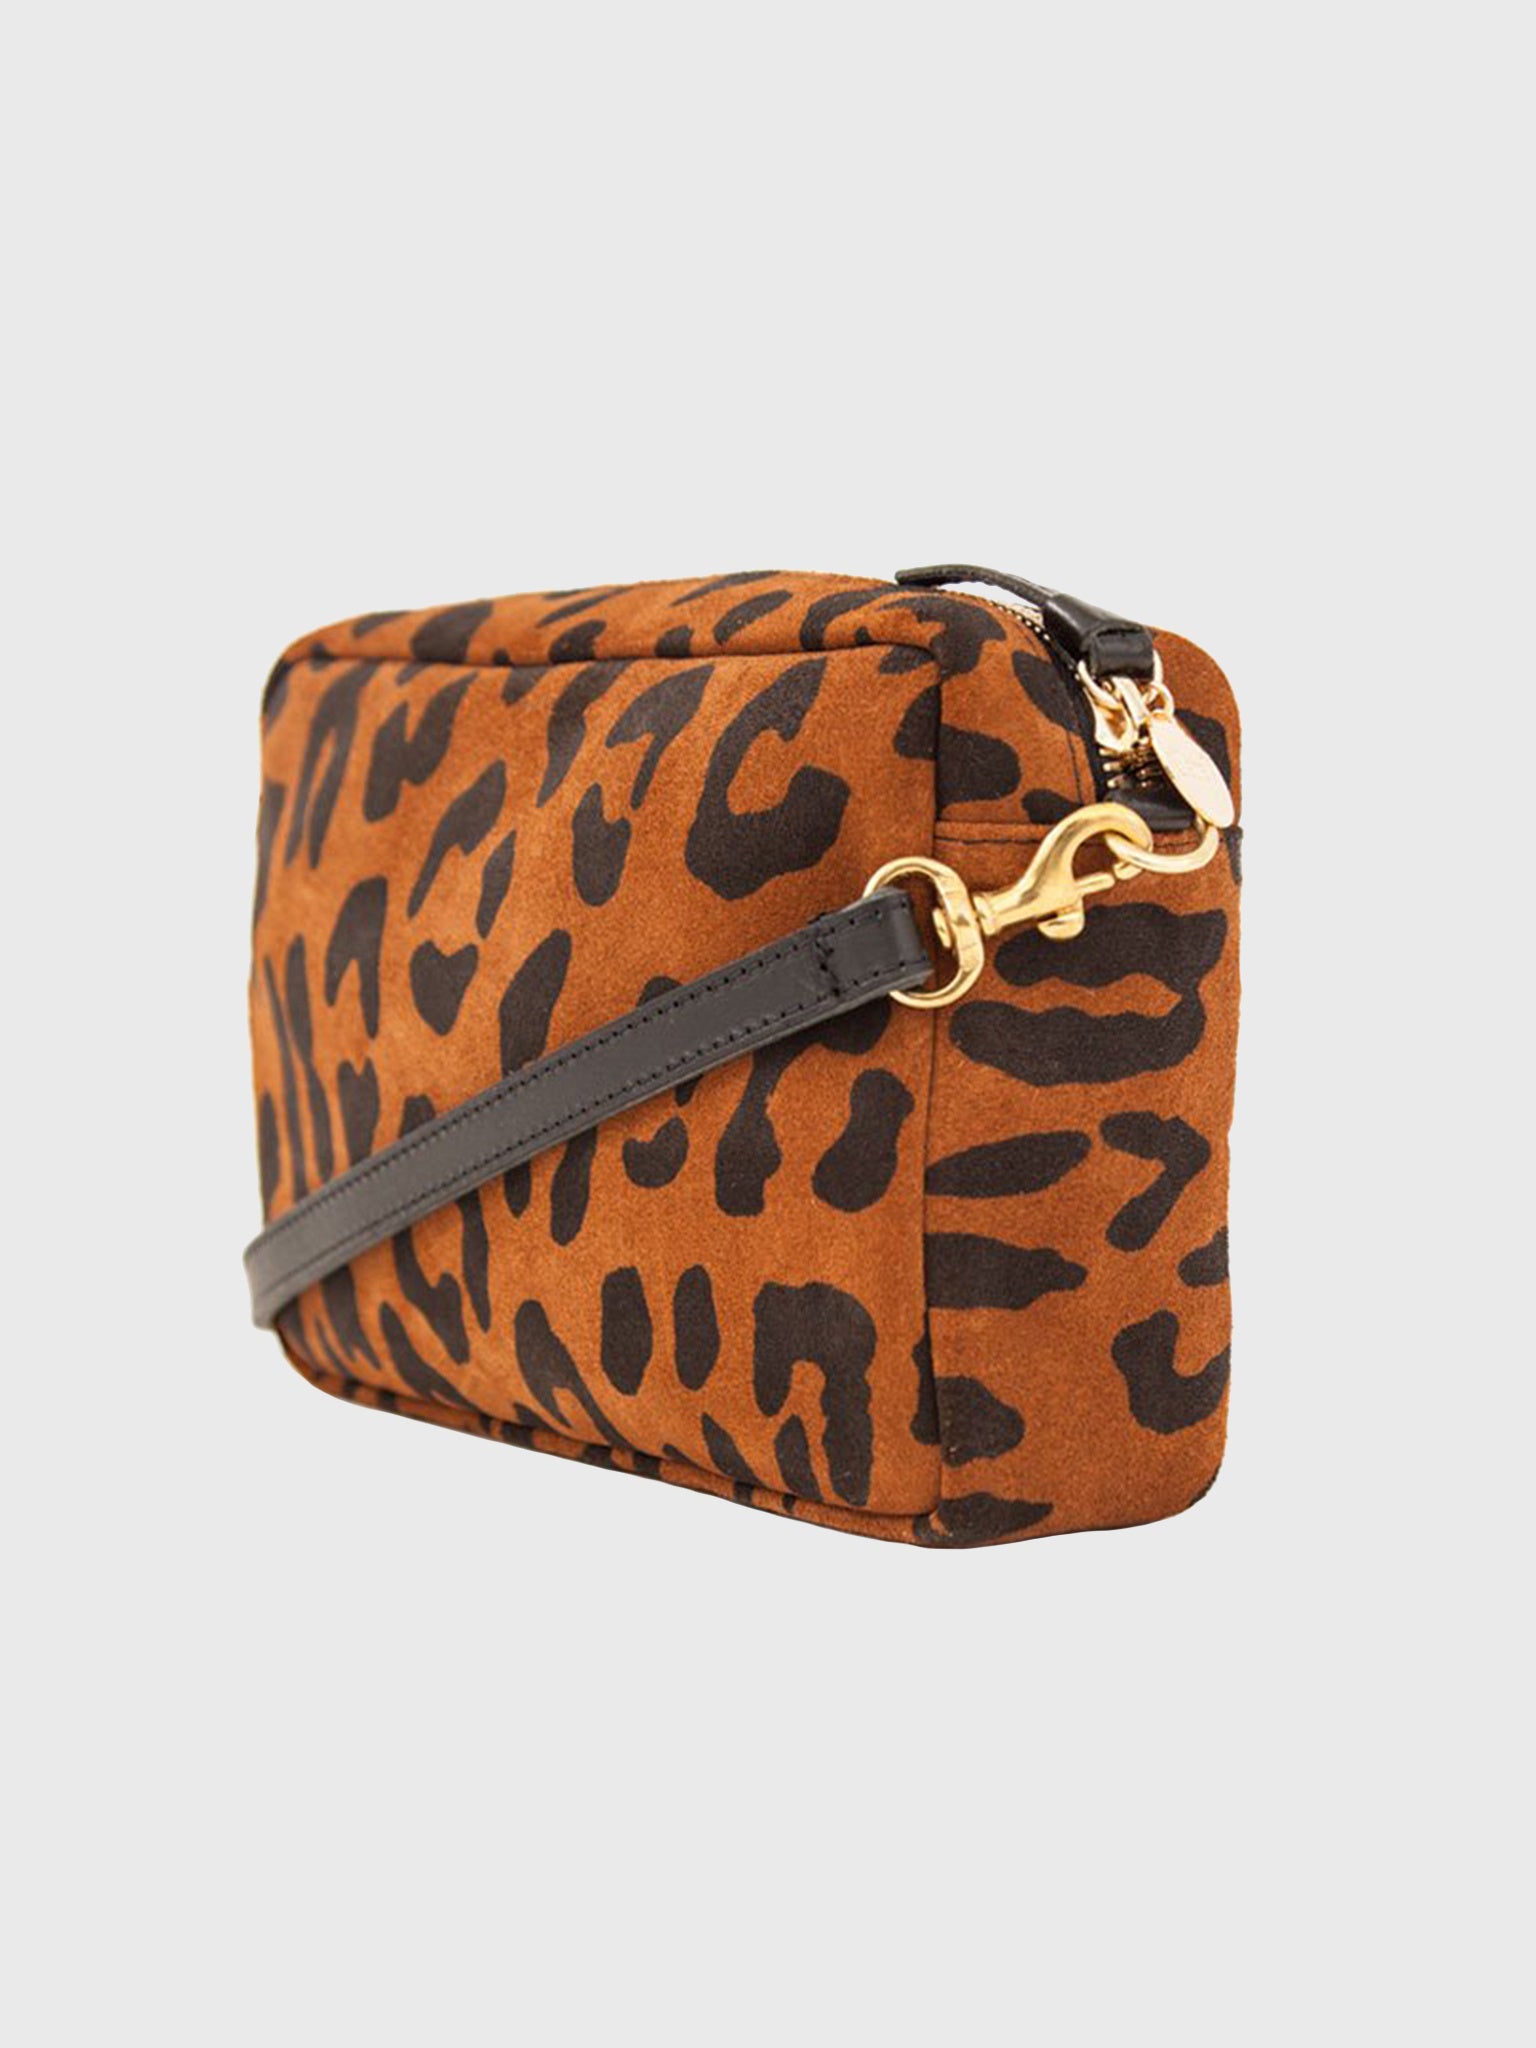 CLARE V. Midi Sac Animal Leopard Print Leather Shoulder Bag Cat Suede